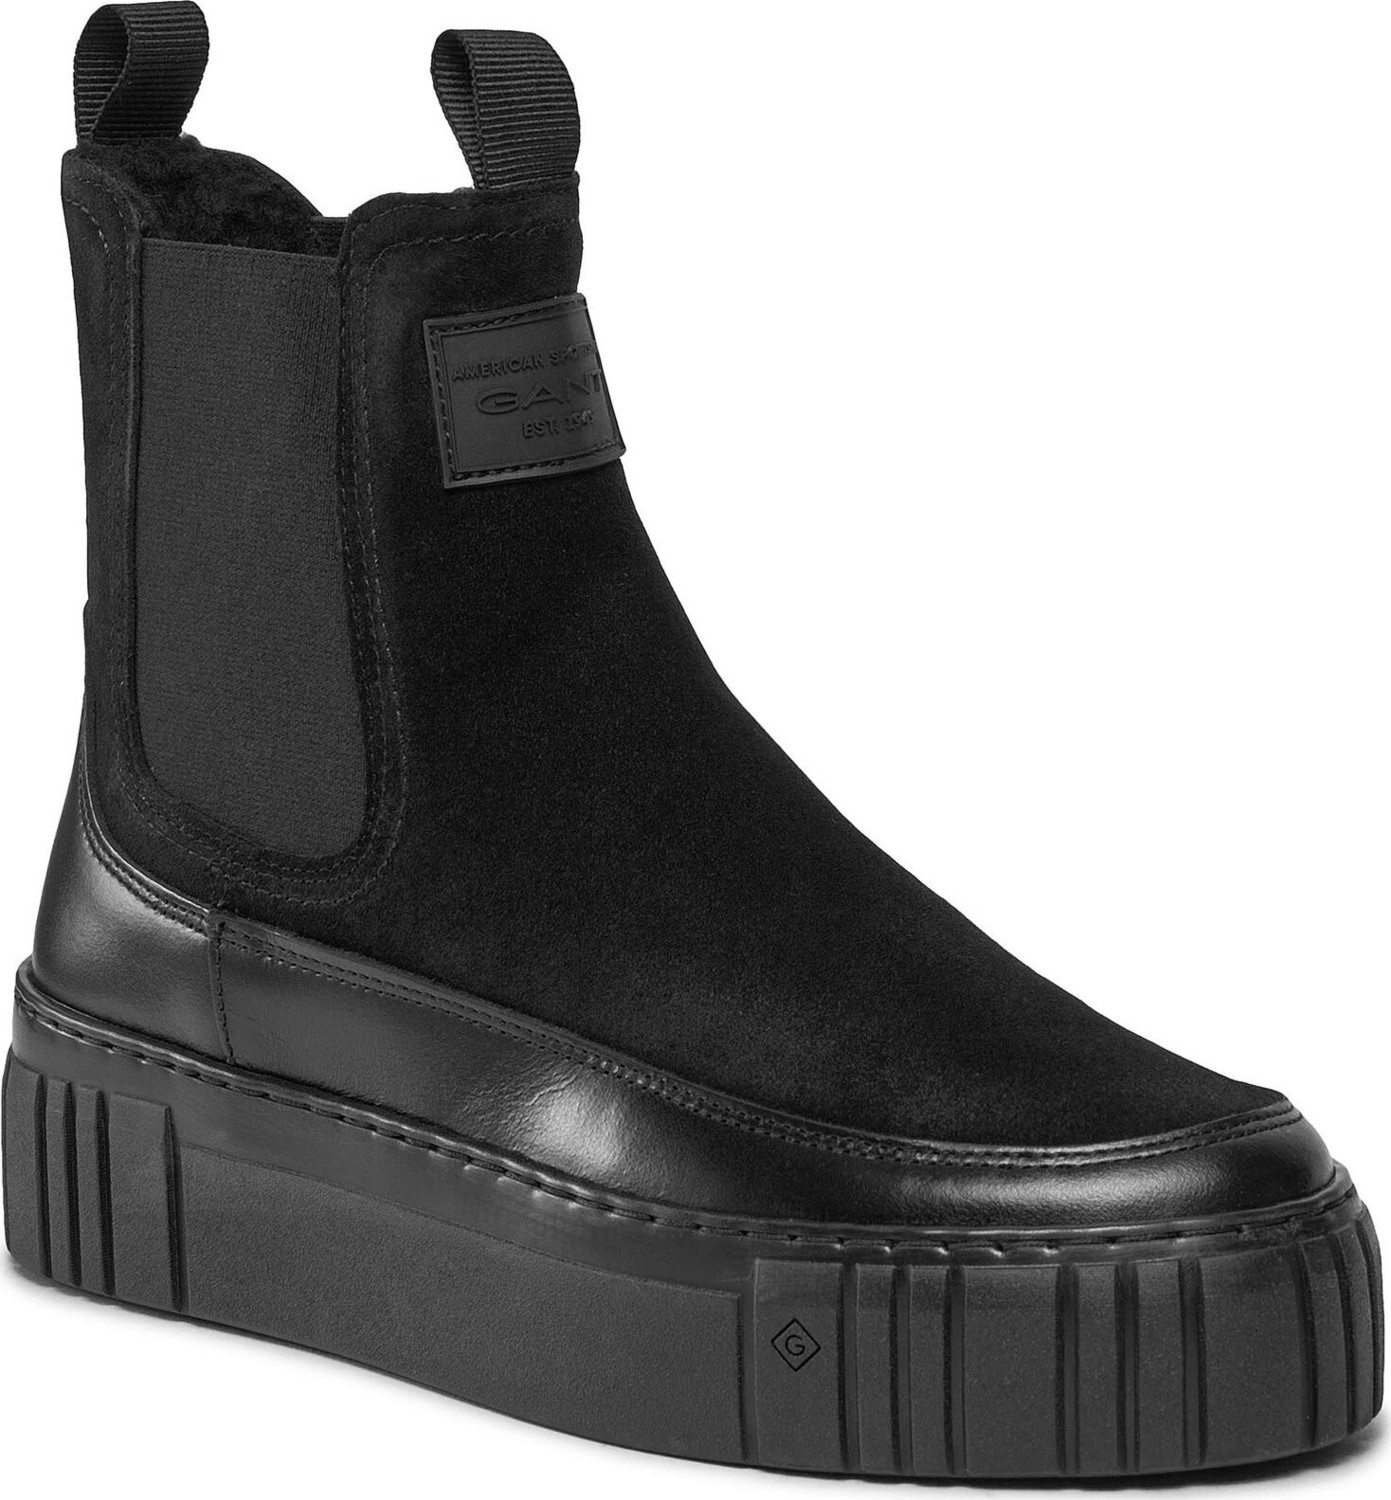 Kotníková obuv s elastickým prvkem Gant Snowmont Chelsea Boot 27553371 Black